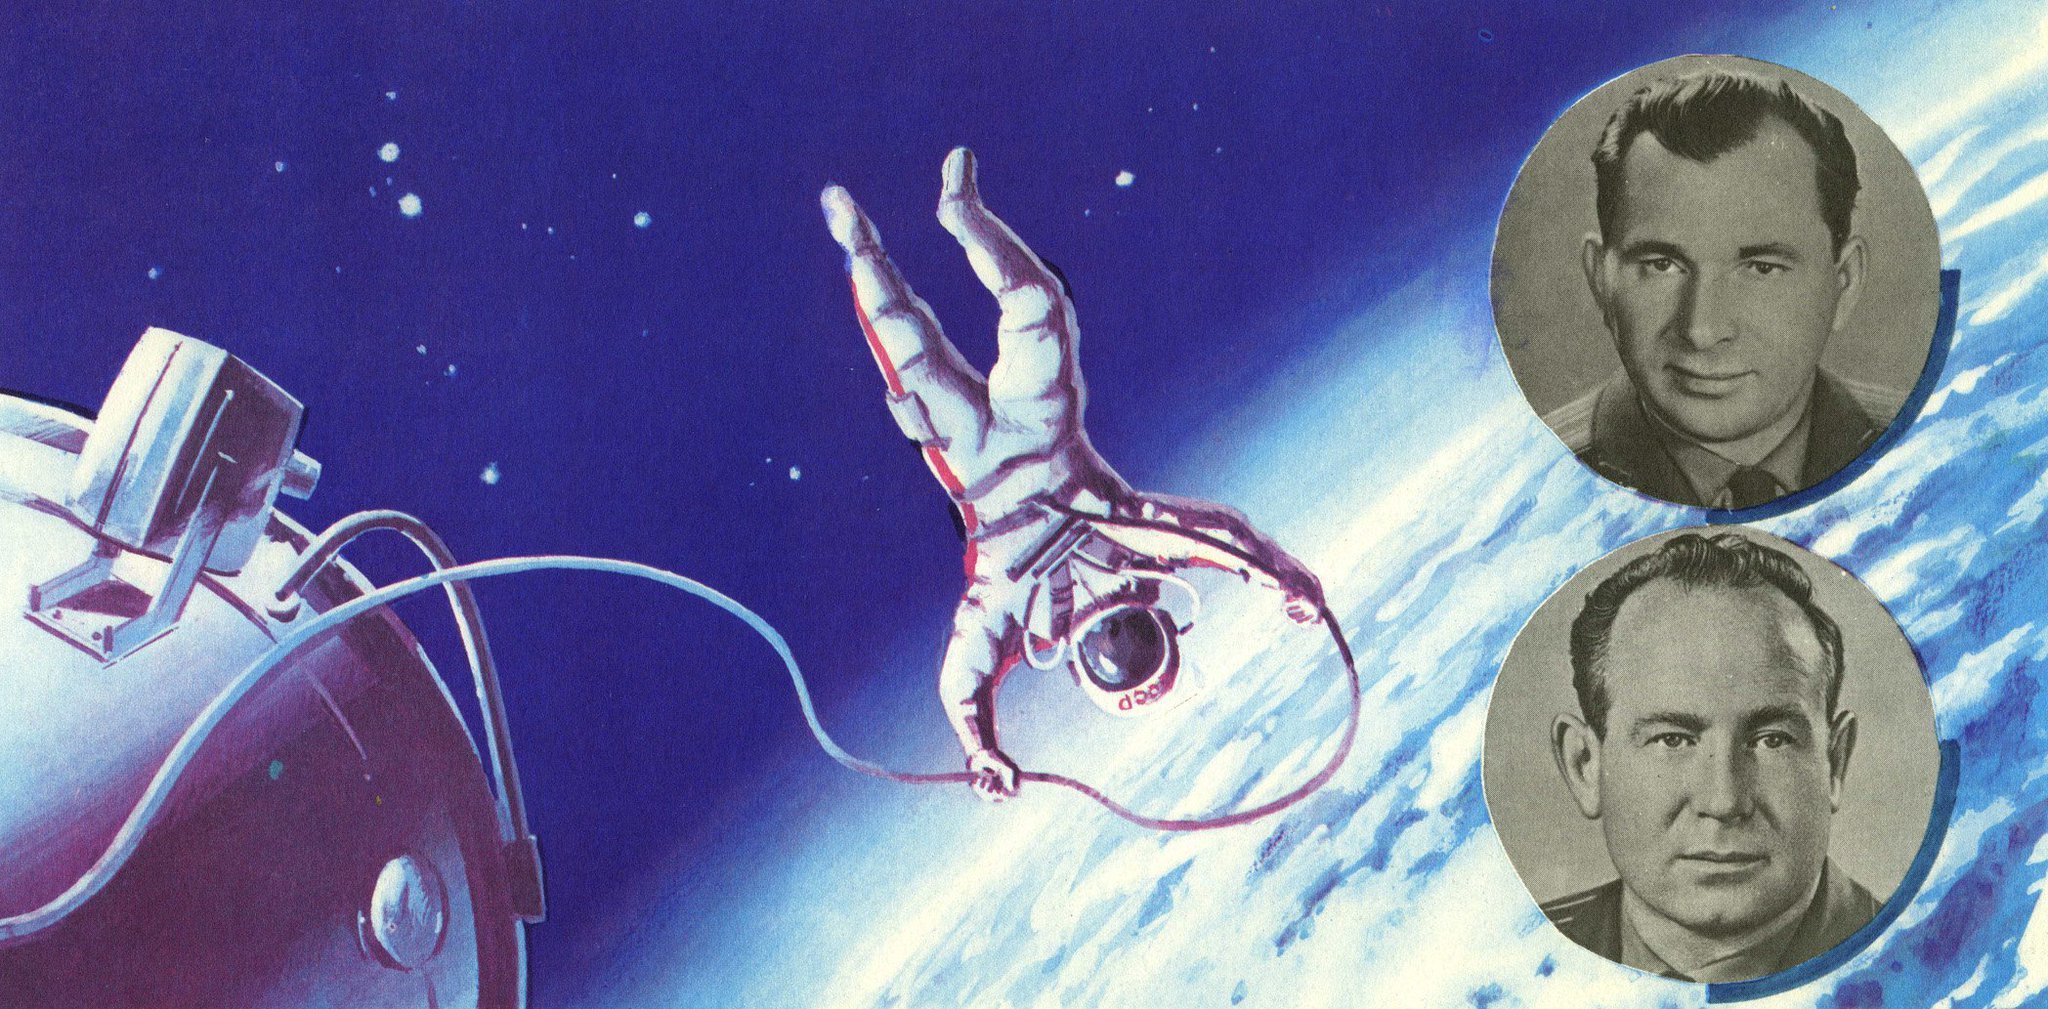 Космонавт совершивший самый длительный полет в космос. Восход 2 космонавты Леонов и Беляев. Космонавты Леонов и Беляев в открытом космосе. Корабль "Восход-2" с Алексеем Леоновым.